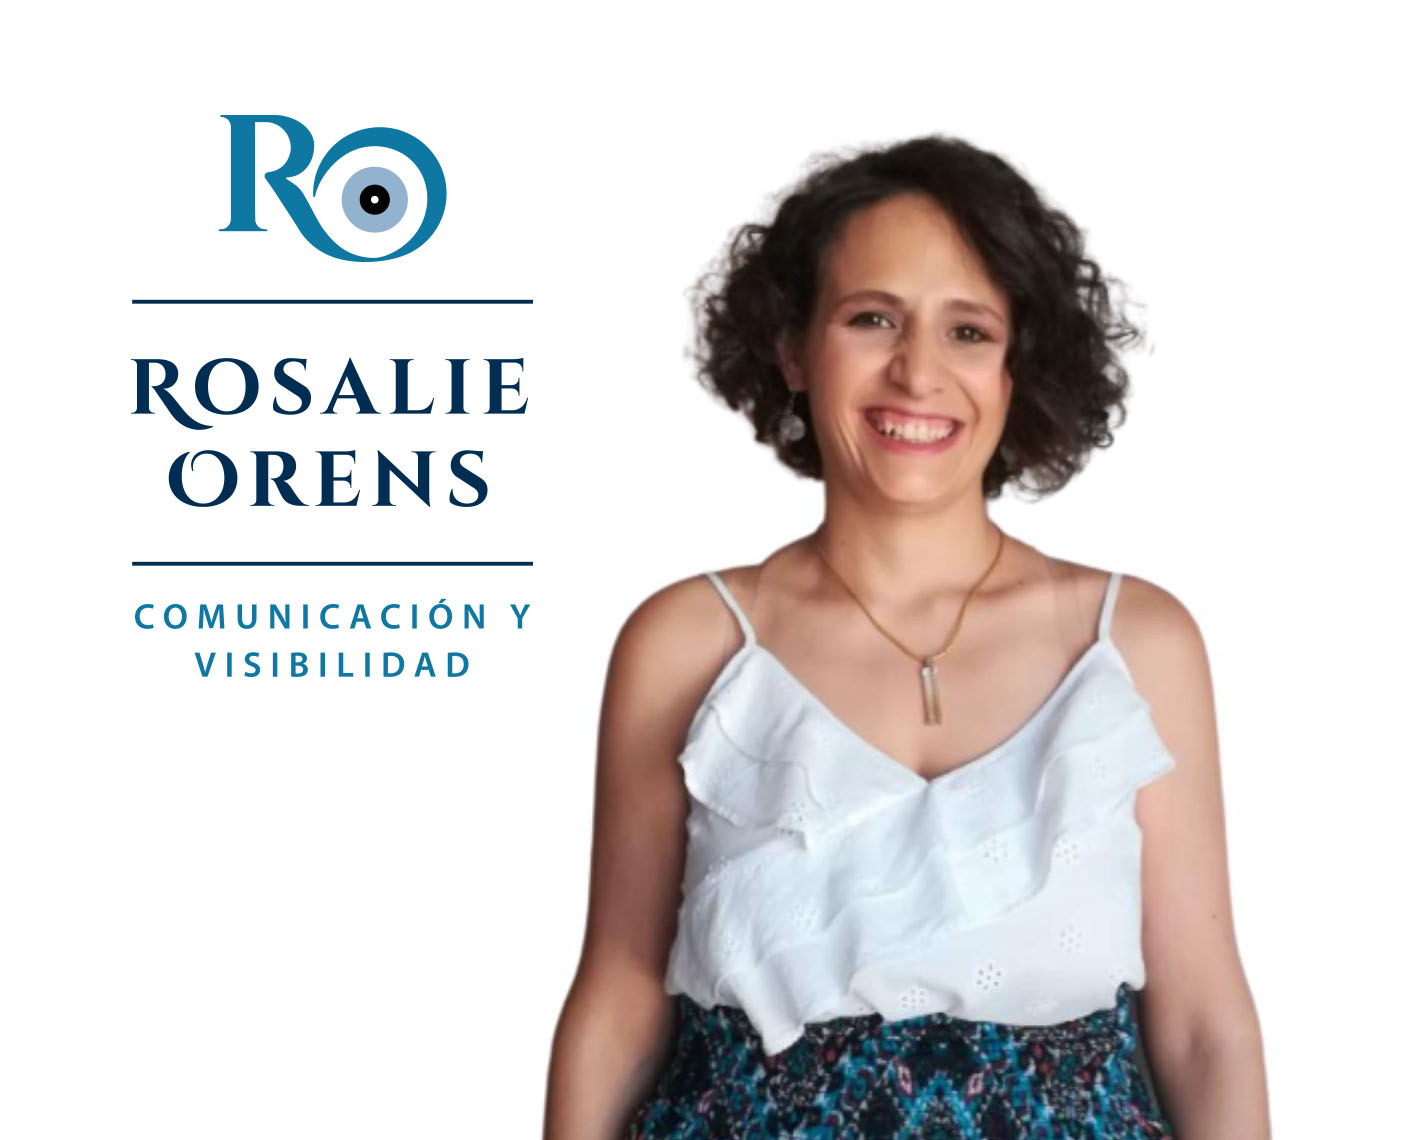 Rosalie Orens